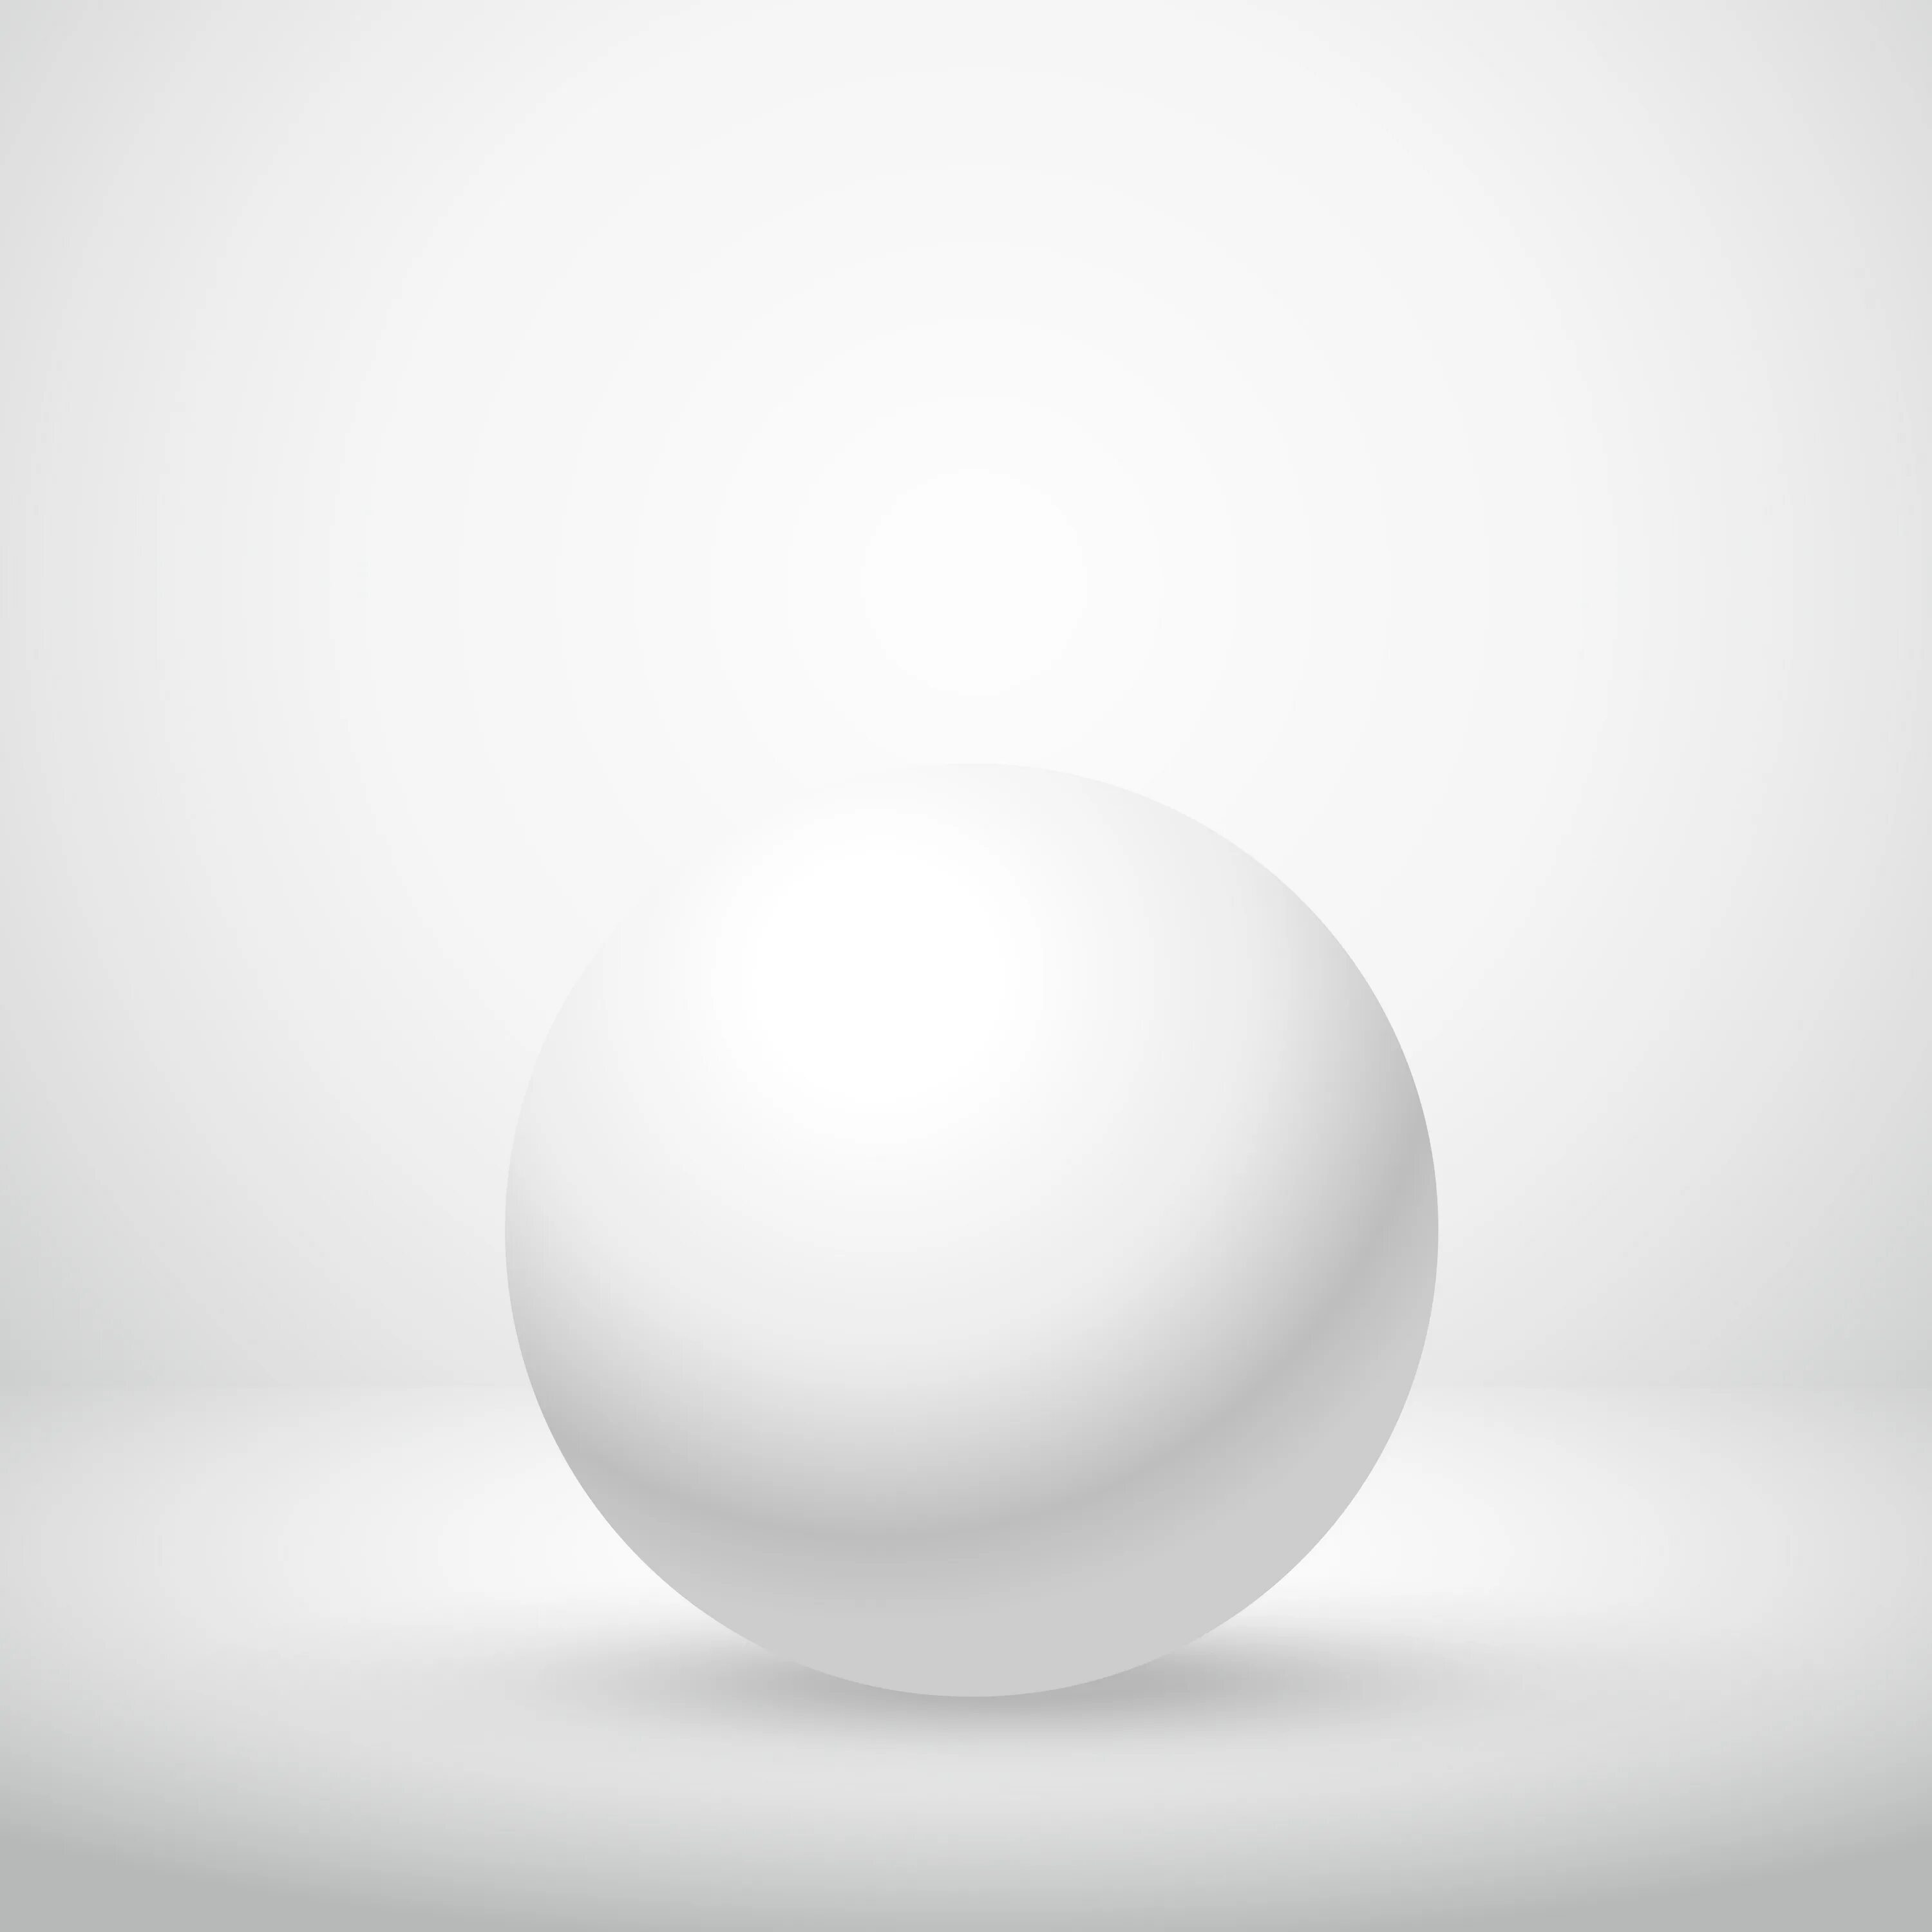 Шар белый свет. Белый стеклянный шар. Белая фигура. Гипсовый шар. Белая сфера.